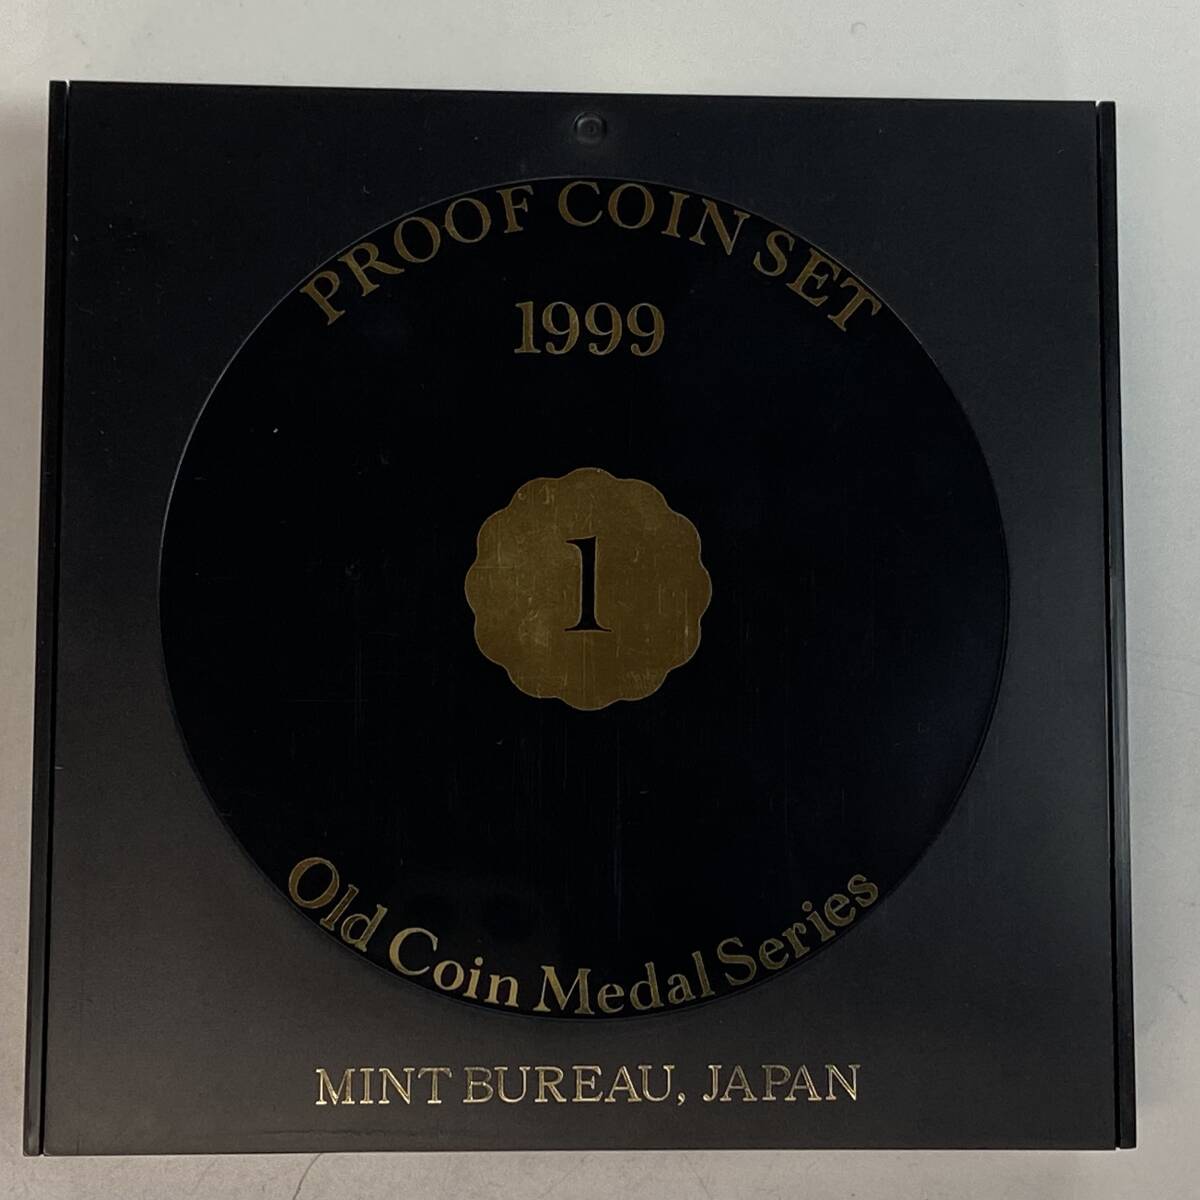 プルーフ貨幣セット 1999年 平成11年 造幣局 オールドコインメダルシリーズ Old Coin Medal 記念硬貨セットの画像5